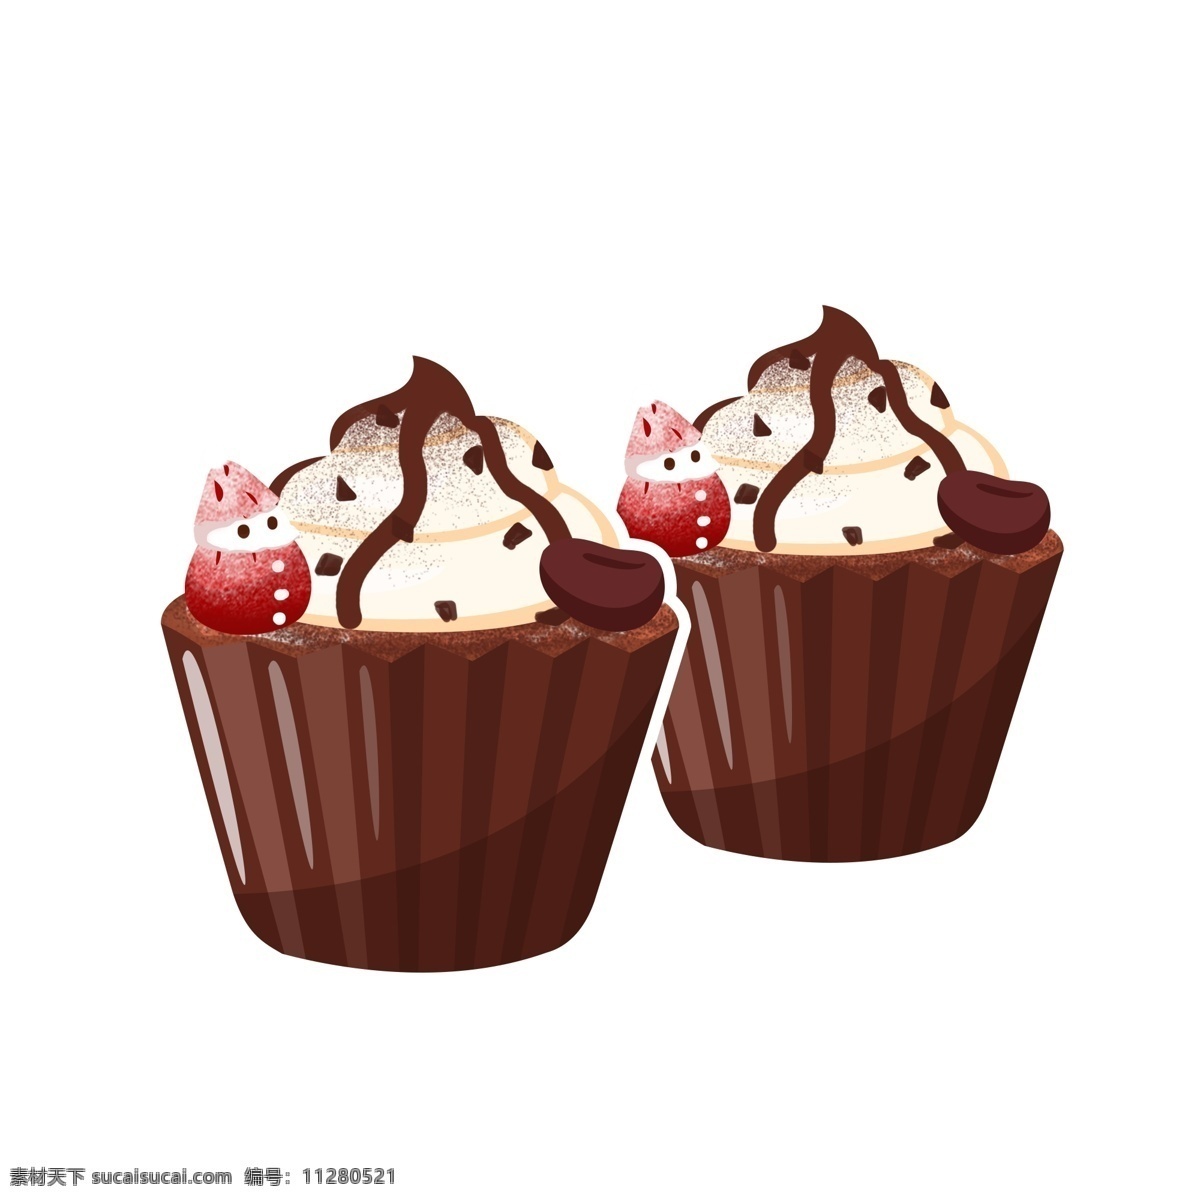 美食 甜品 巧克力 草莓 咖啡 蛋糕 咖啡豆 矢量 卡通 杯蛋糕 cupcake chocolate 商用